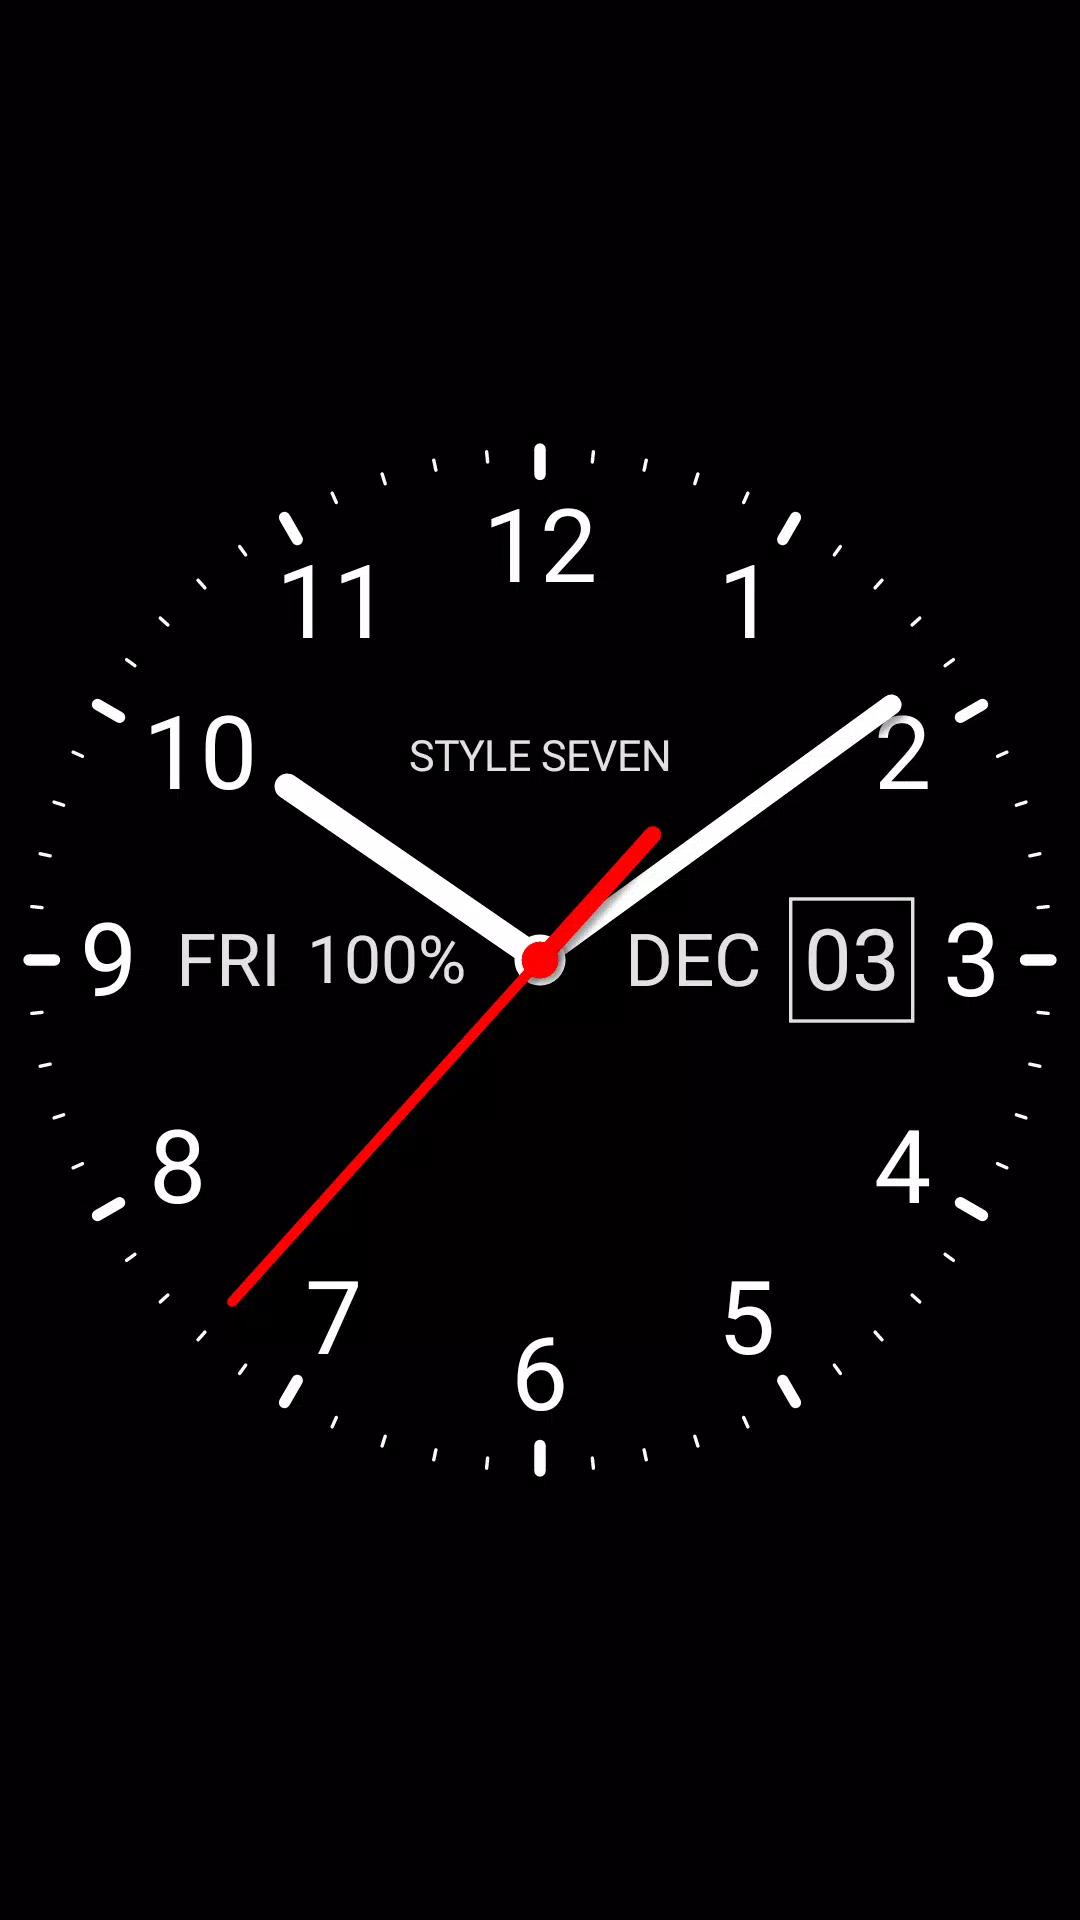 Analog Clock Live Wallpaper-7 cho Android chính là lựa chọn hoàn hảo cho những ai yêu thích phong cách hiện đại và độc đáo. Với đồng hồ ảo nổi bật trên nền hình nền tuyệt đẹp, bạn sẽ luôn bắt kịp với thời gian một cách tiện lợi và thú vị.